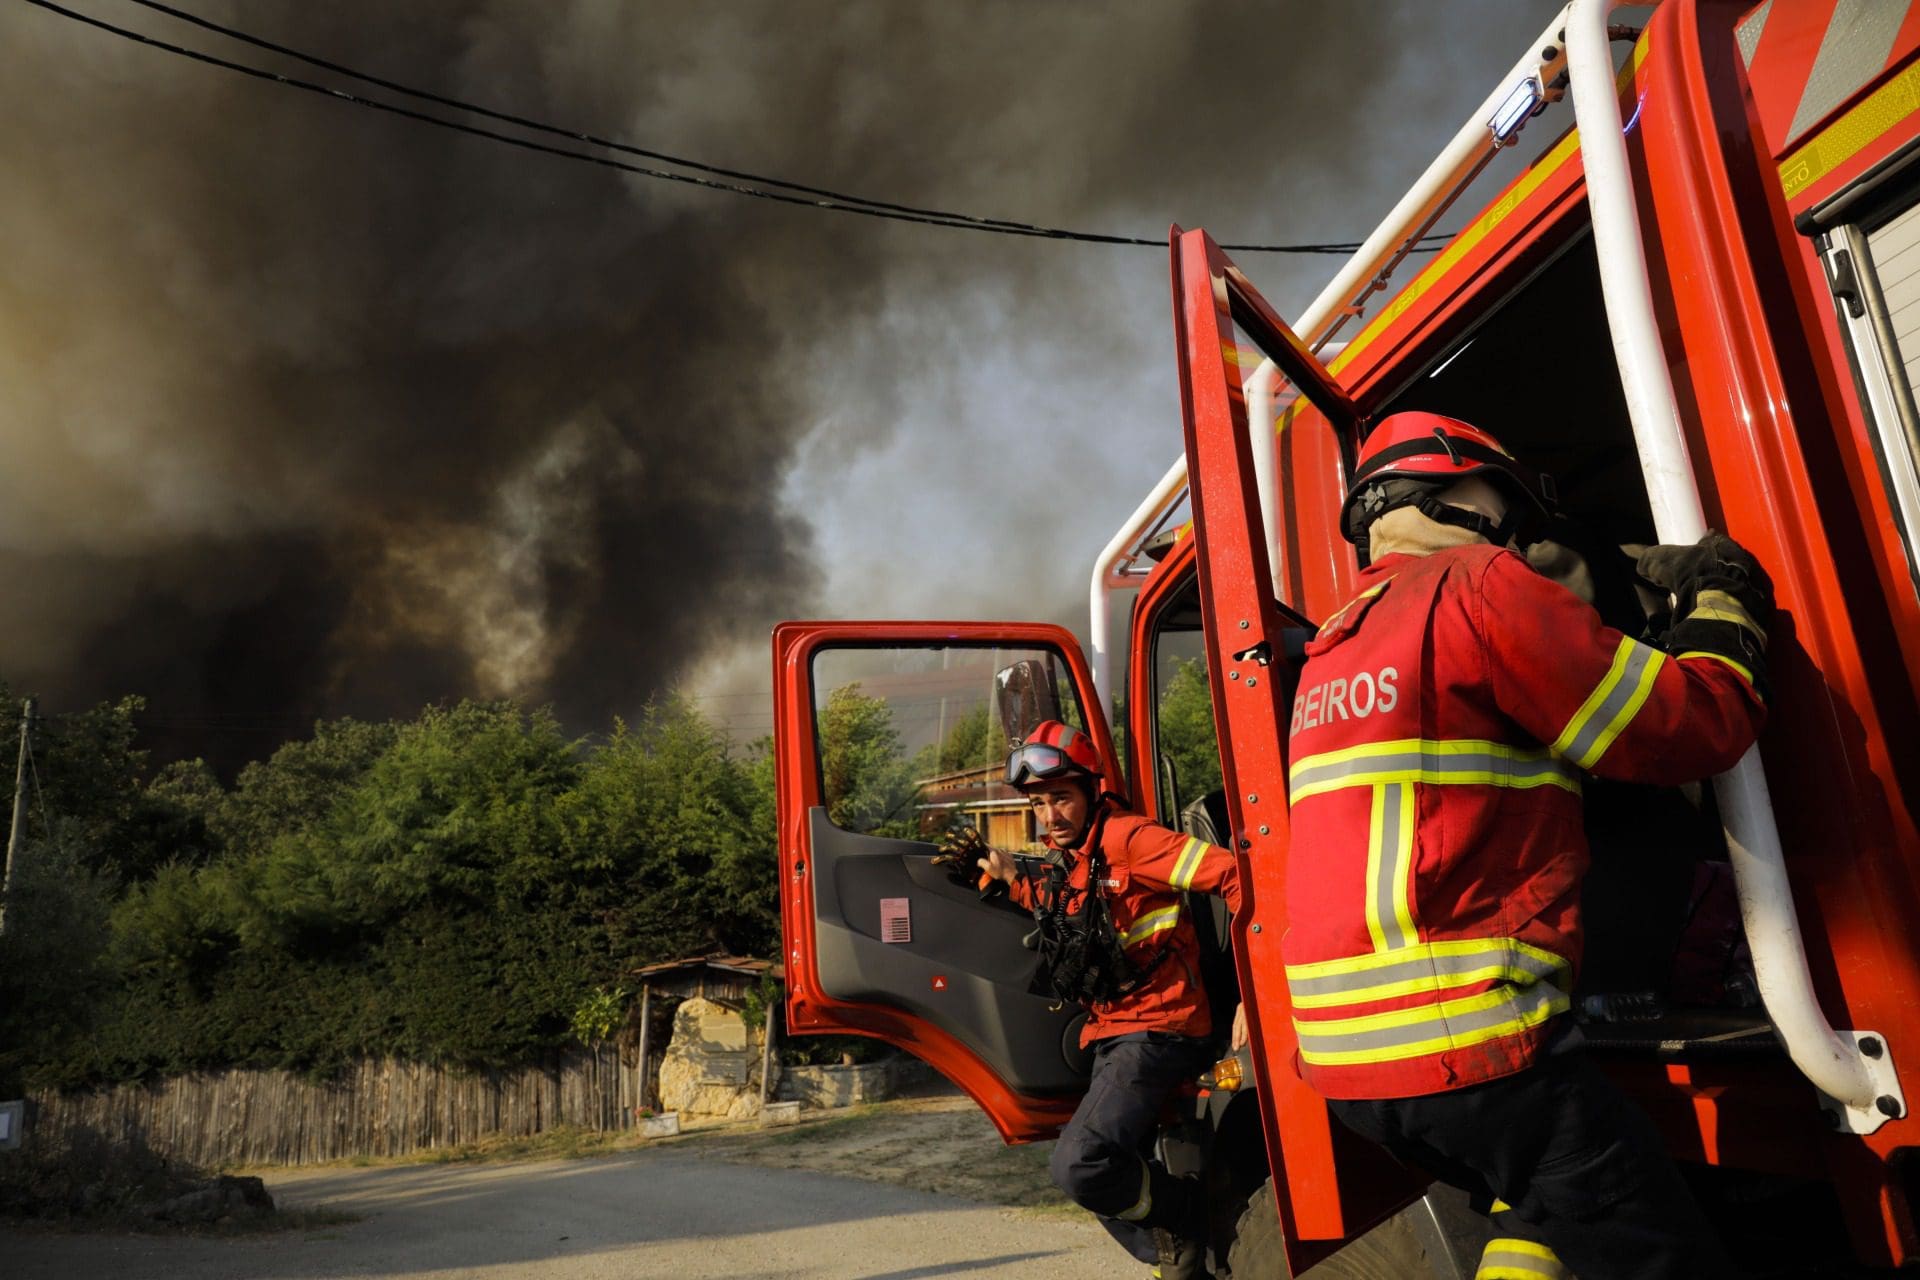 Reacendimento volta a preocupar população em Loulé; Incêndios: Seis ocorrências preocupam Proteção Civil